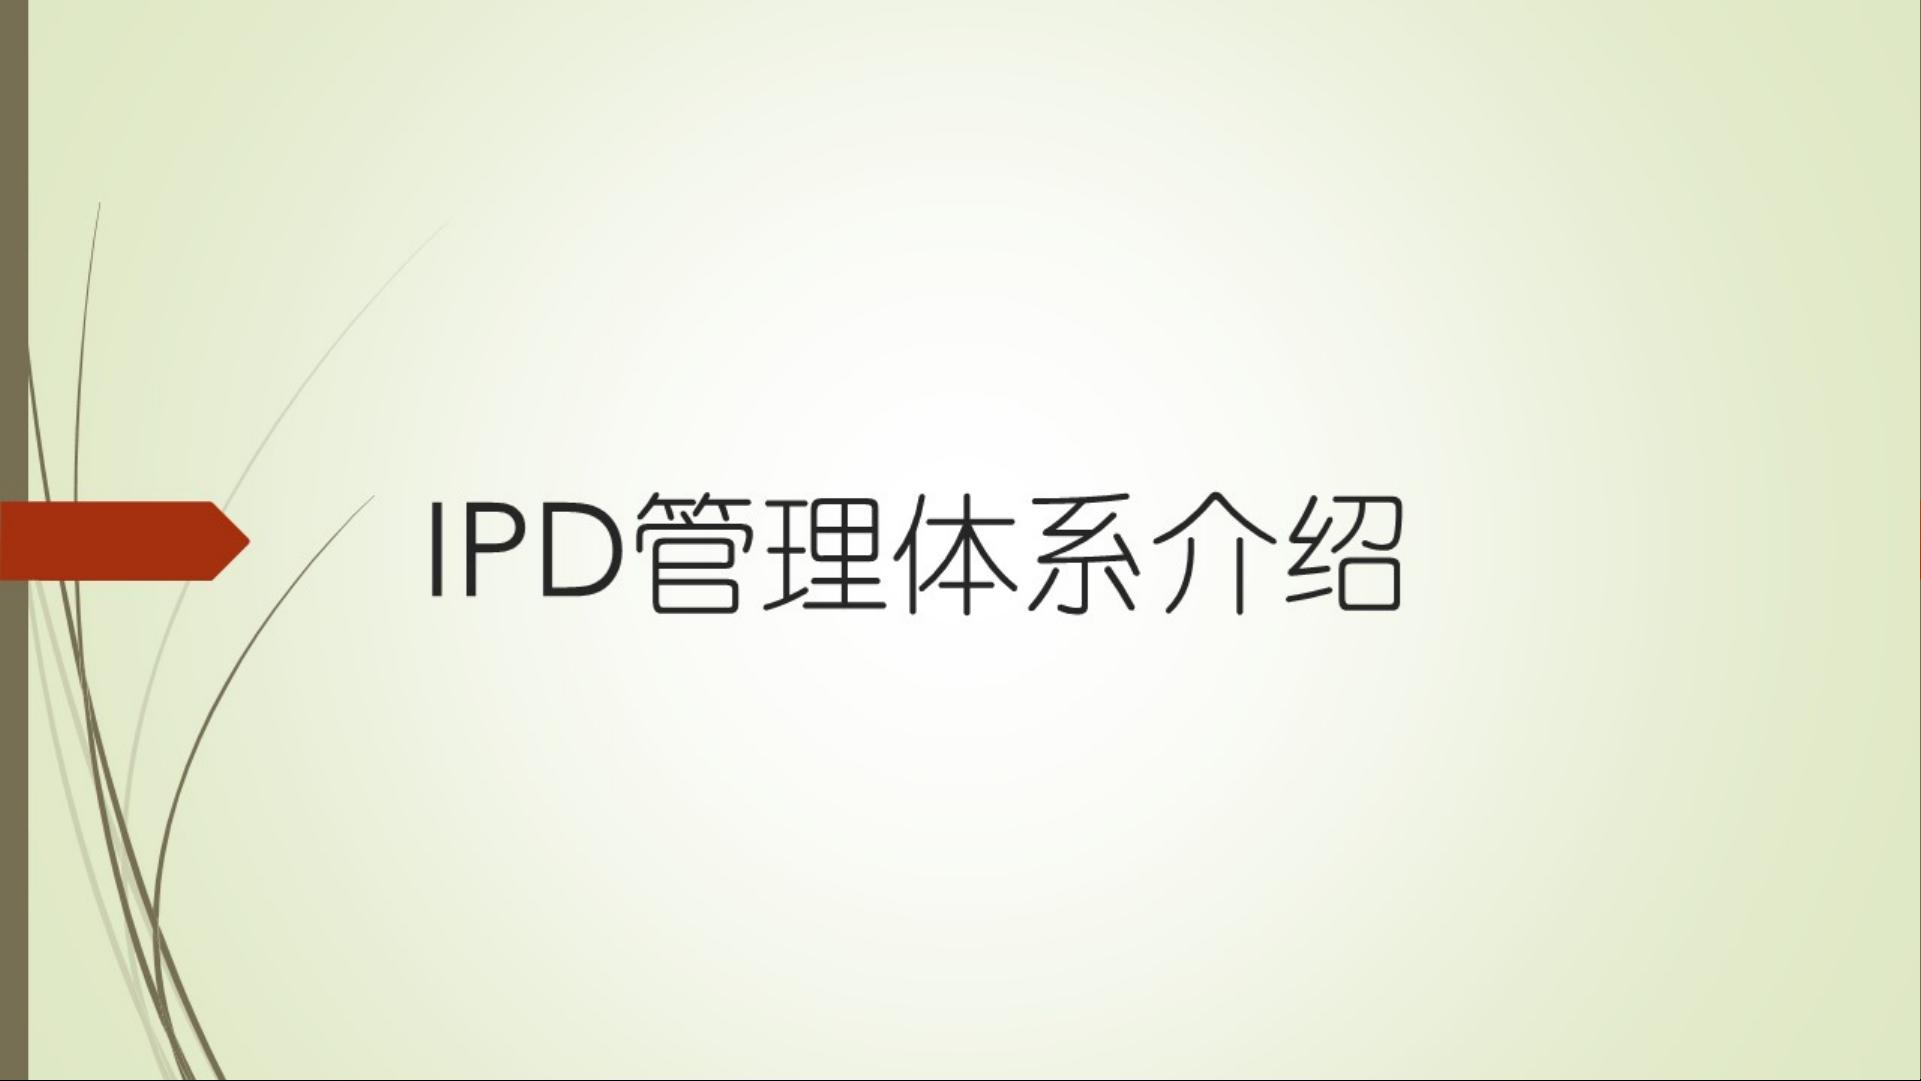 华为完整版IPD体系流程.pdf_ipd:华为的研发之道下载资源-CSDN文库